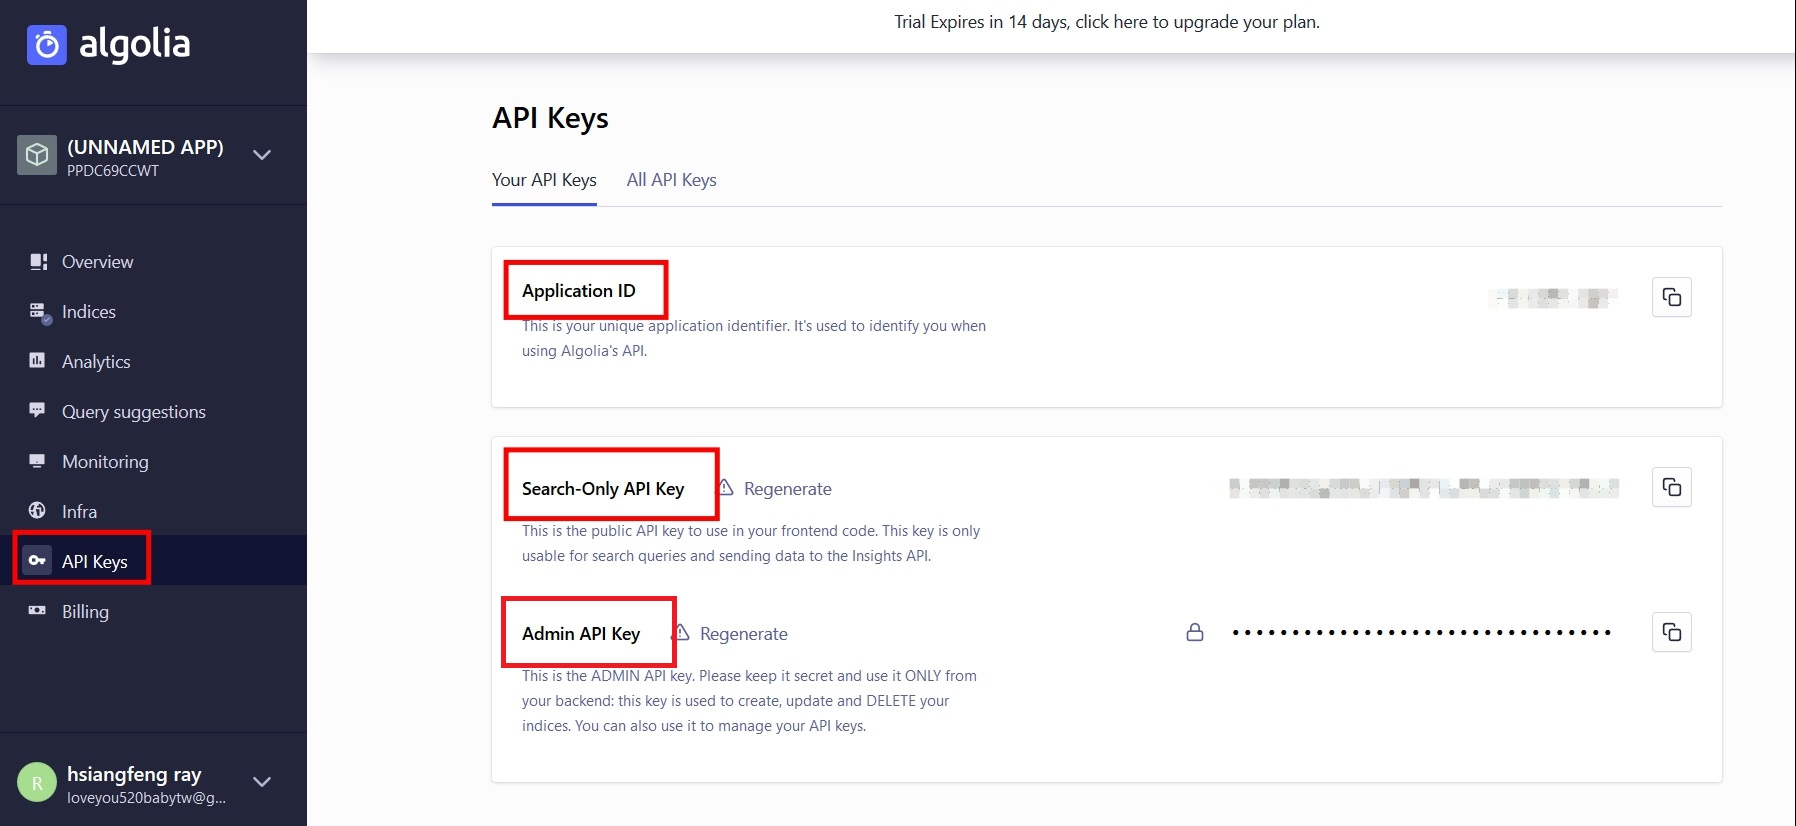 API Keys